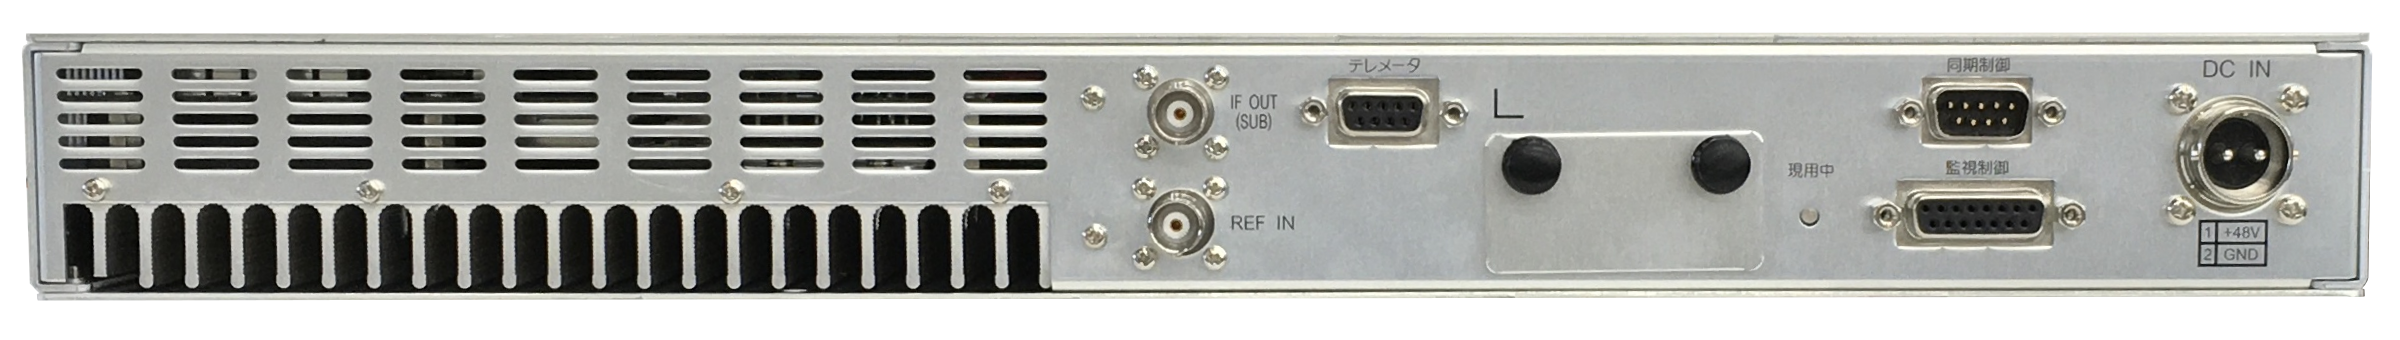 [pic] MODEL 6514 シリーズ: 地上デジタル放送 送信装置 背面